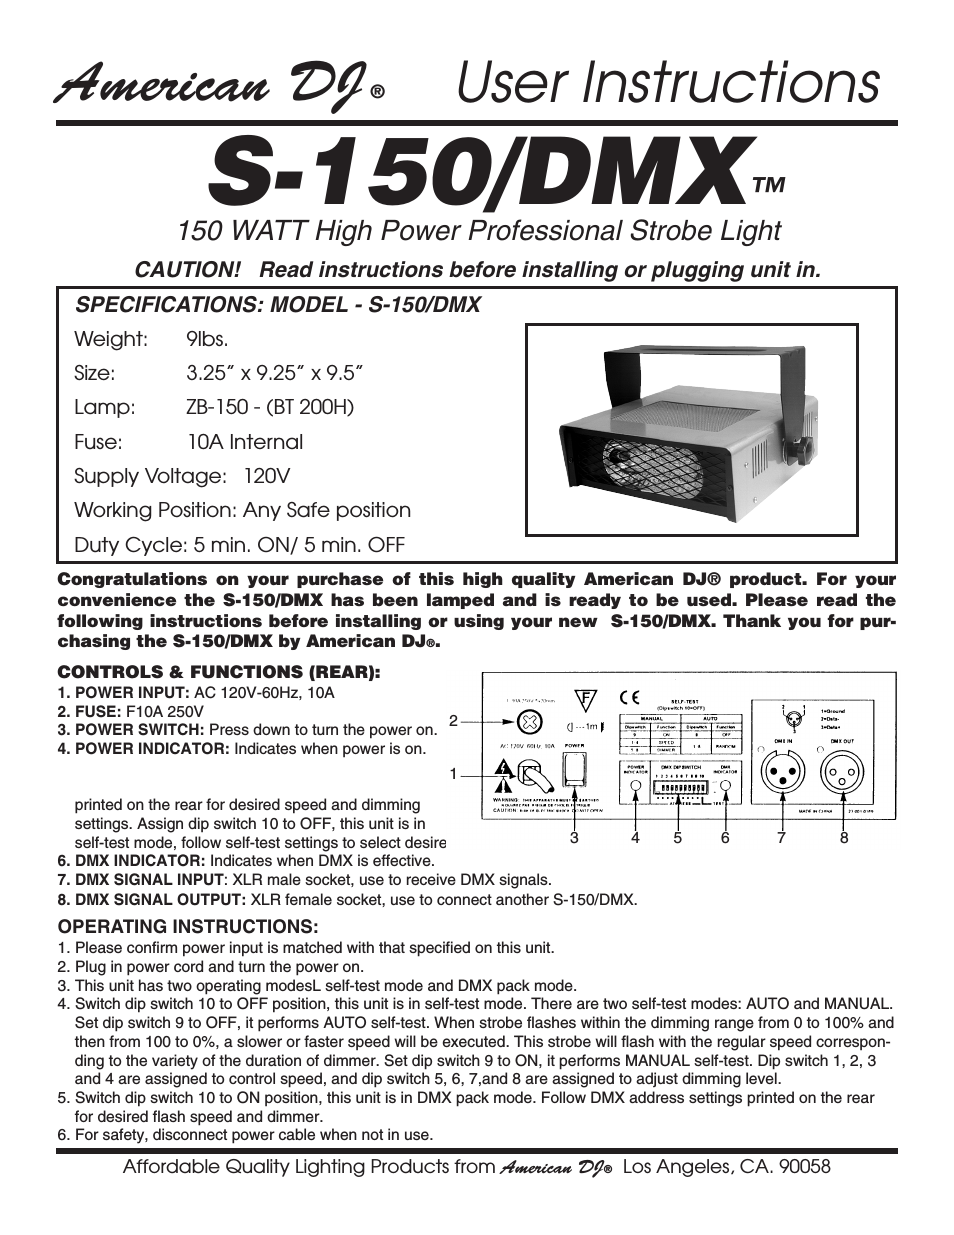 S-150/DMX